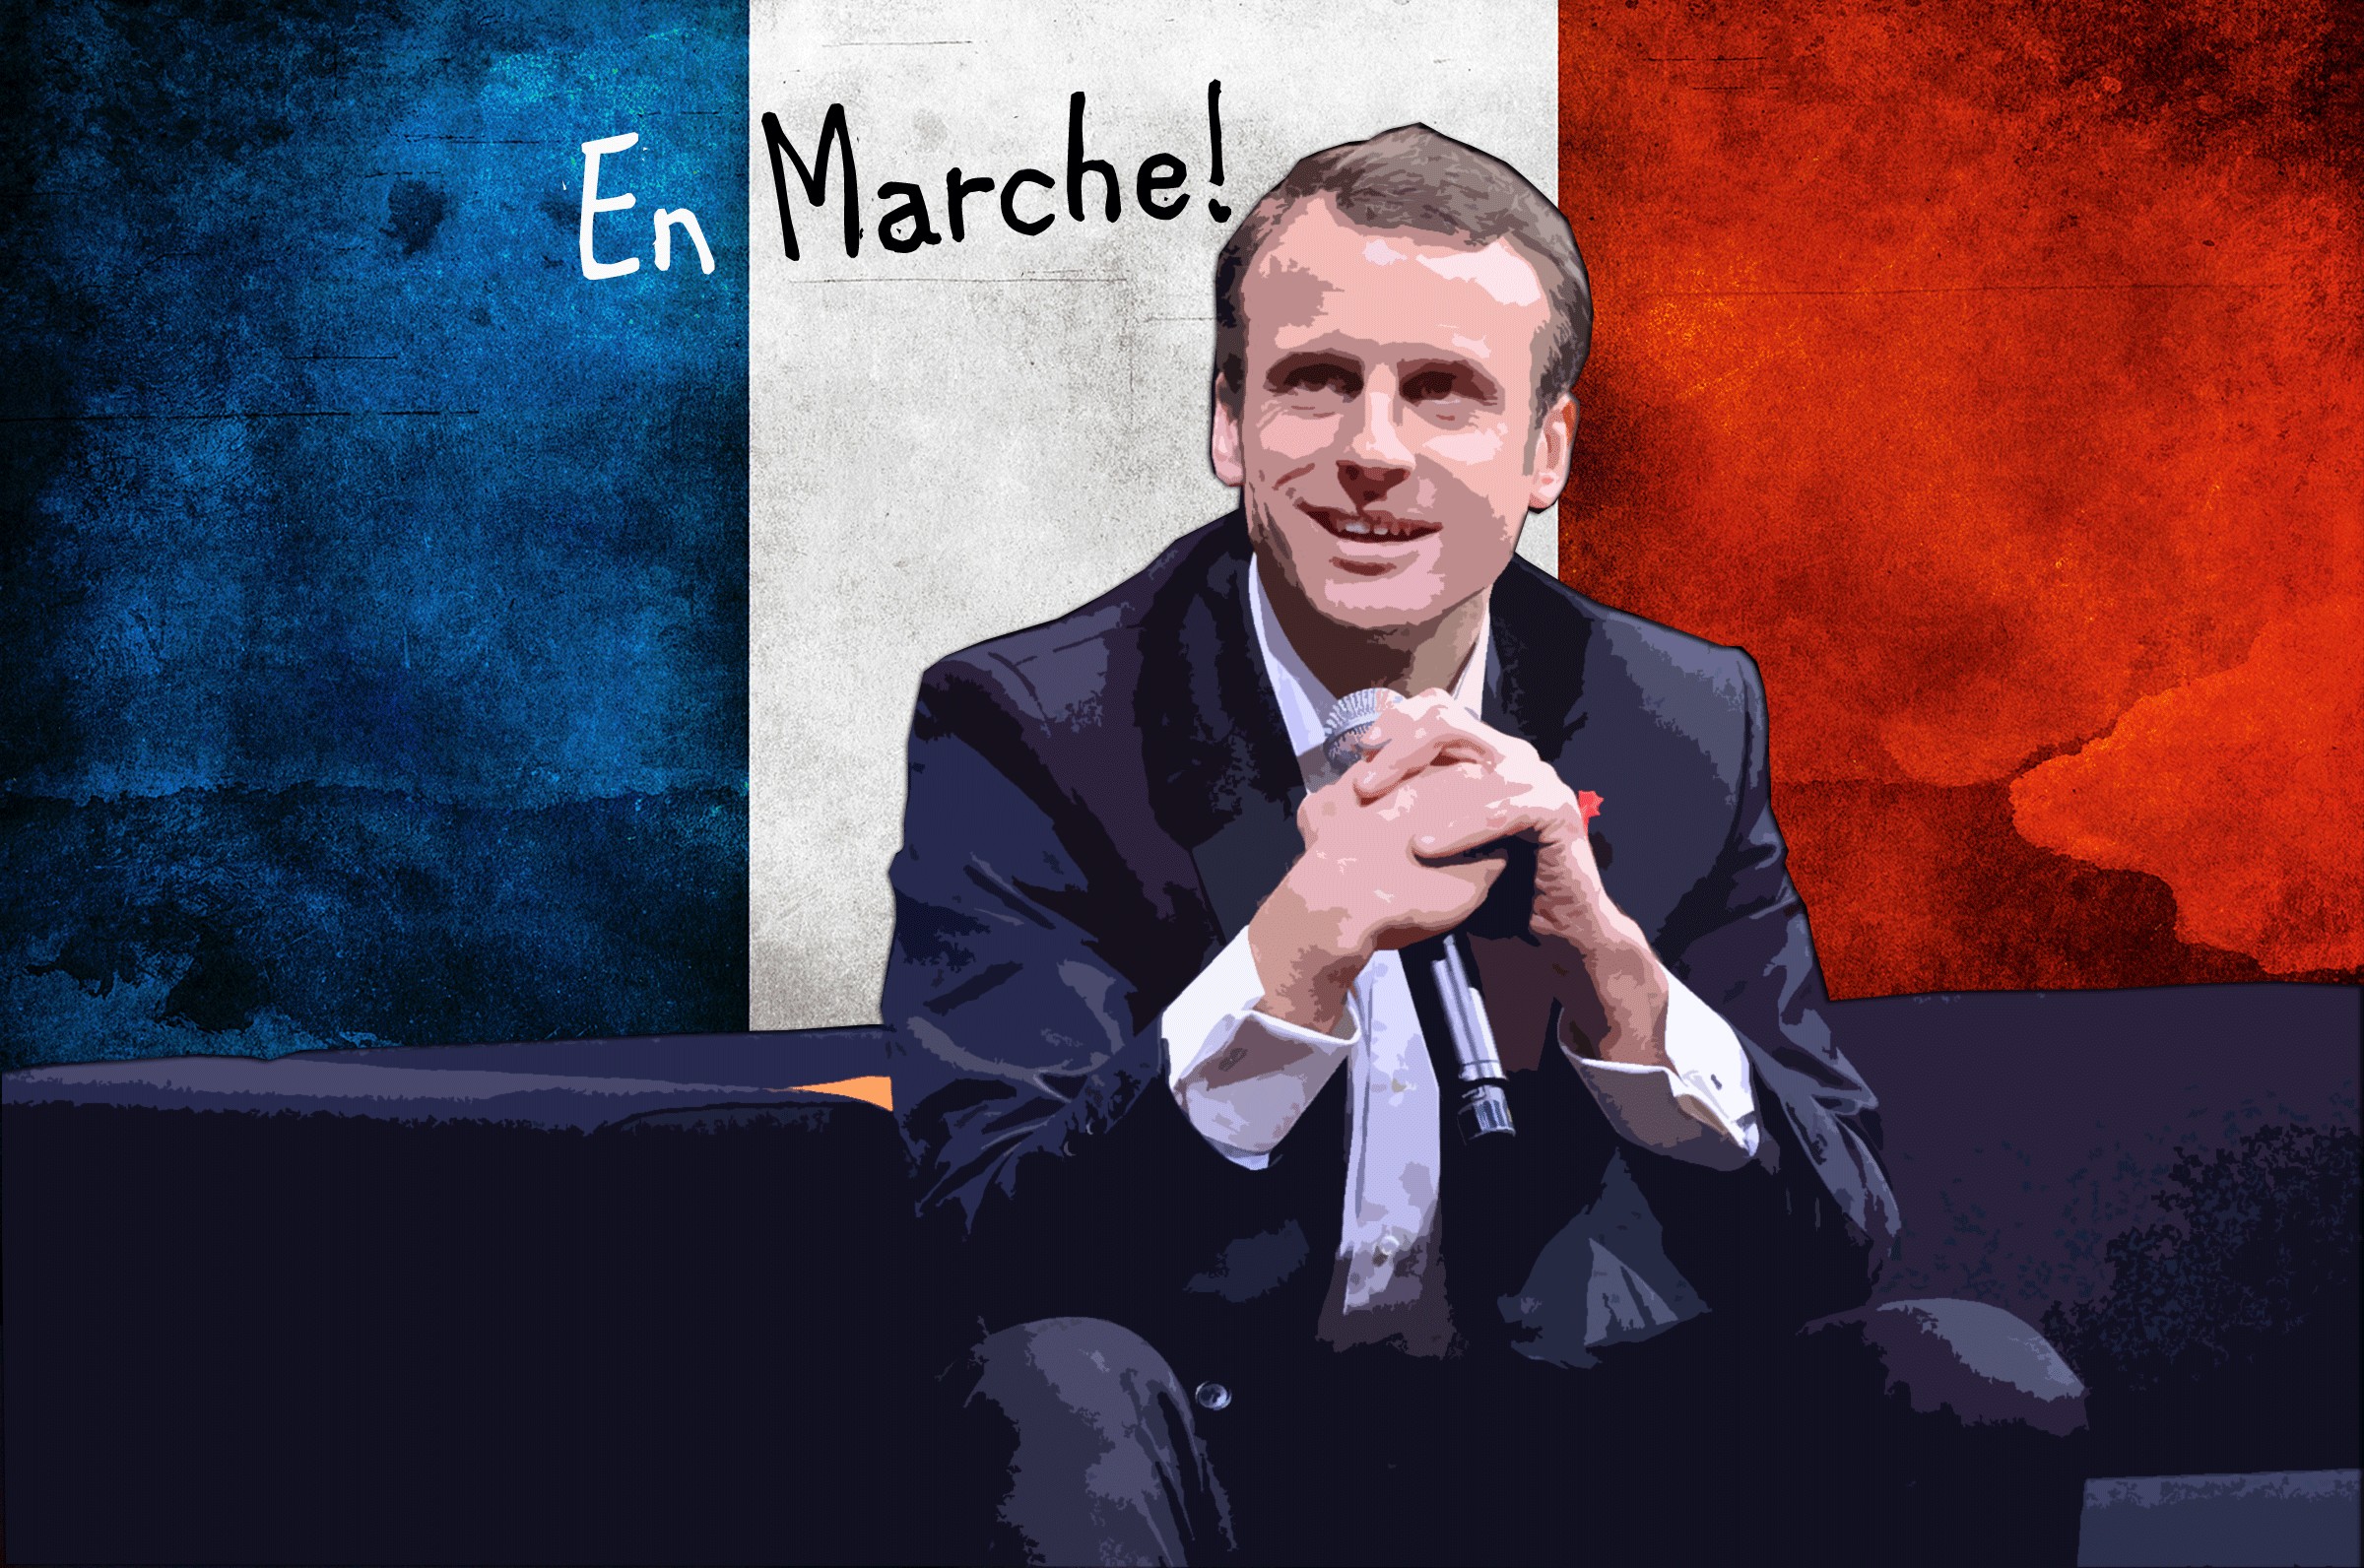 En Marche! Who is Emmanuel Macron?